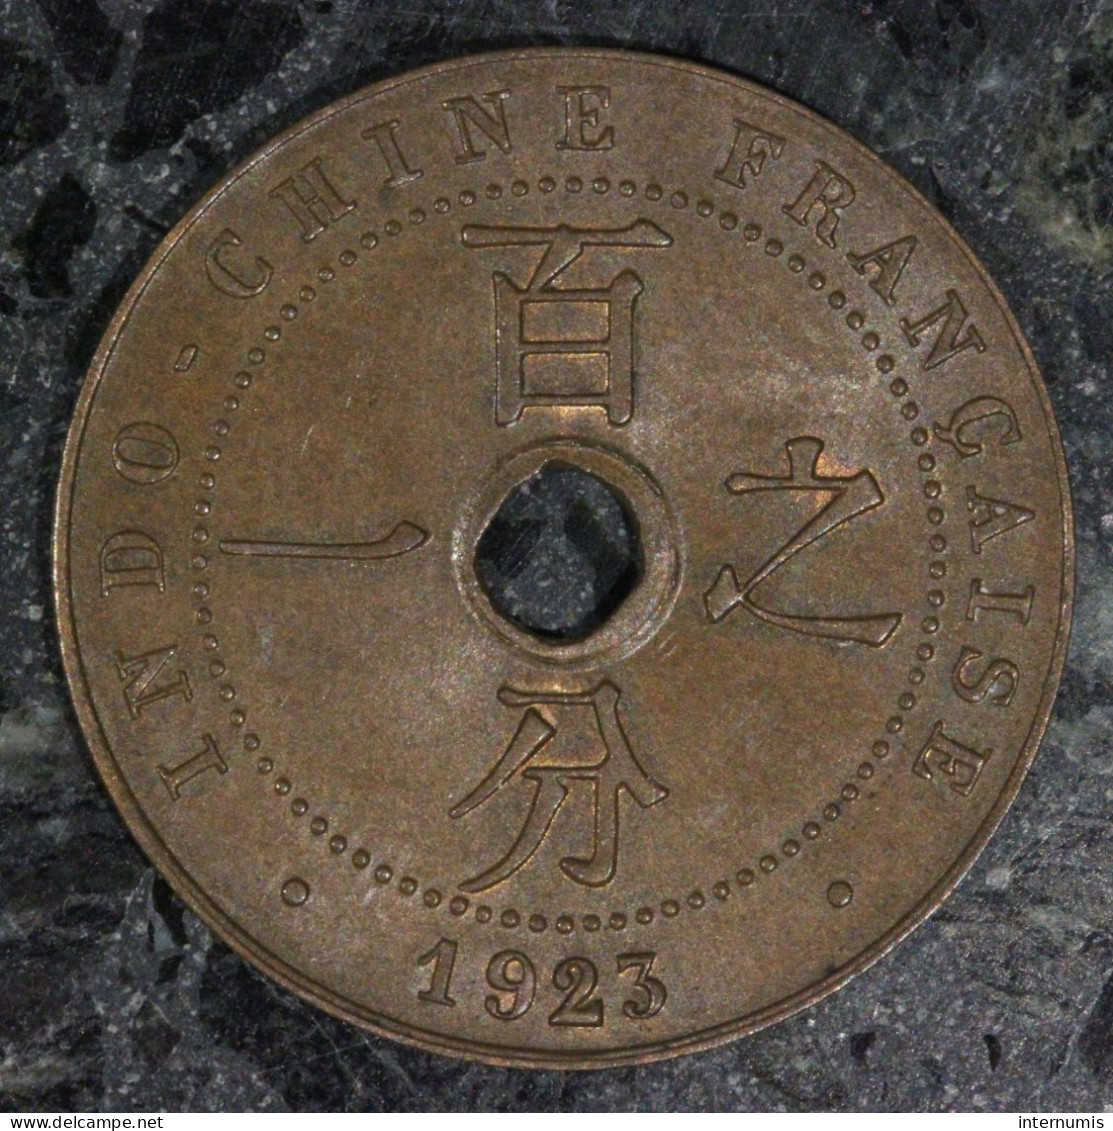  Indochine / Indochina, , 1 Centième / 1 Cent, 1923, Poissy, Bronze, SPL (UNC),
KM#12.1, Lec.92 - Indochine